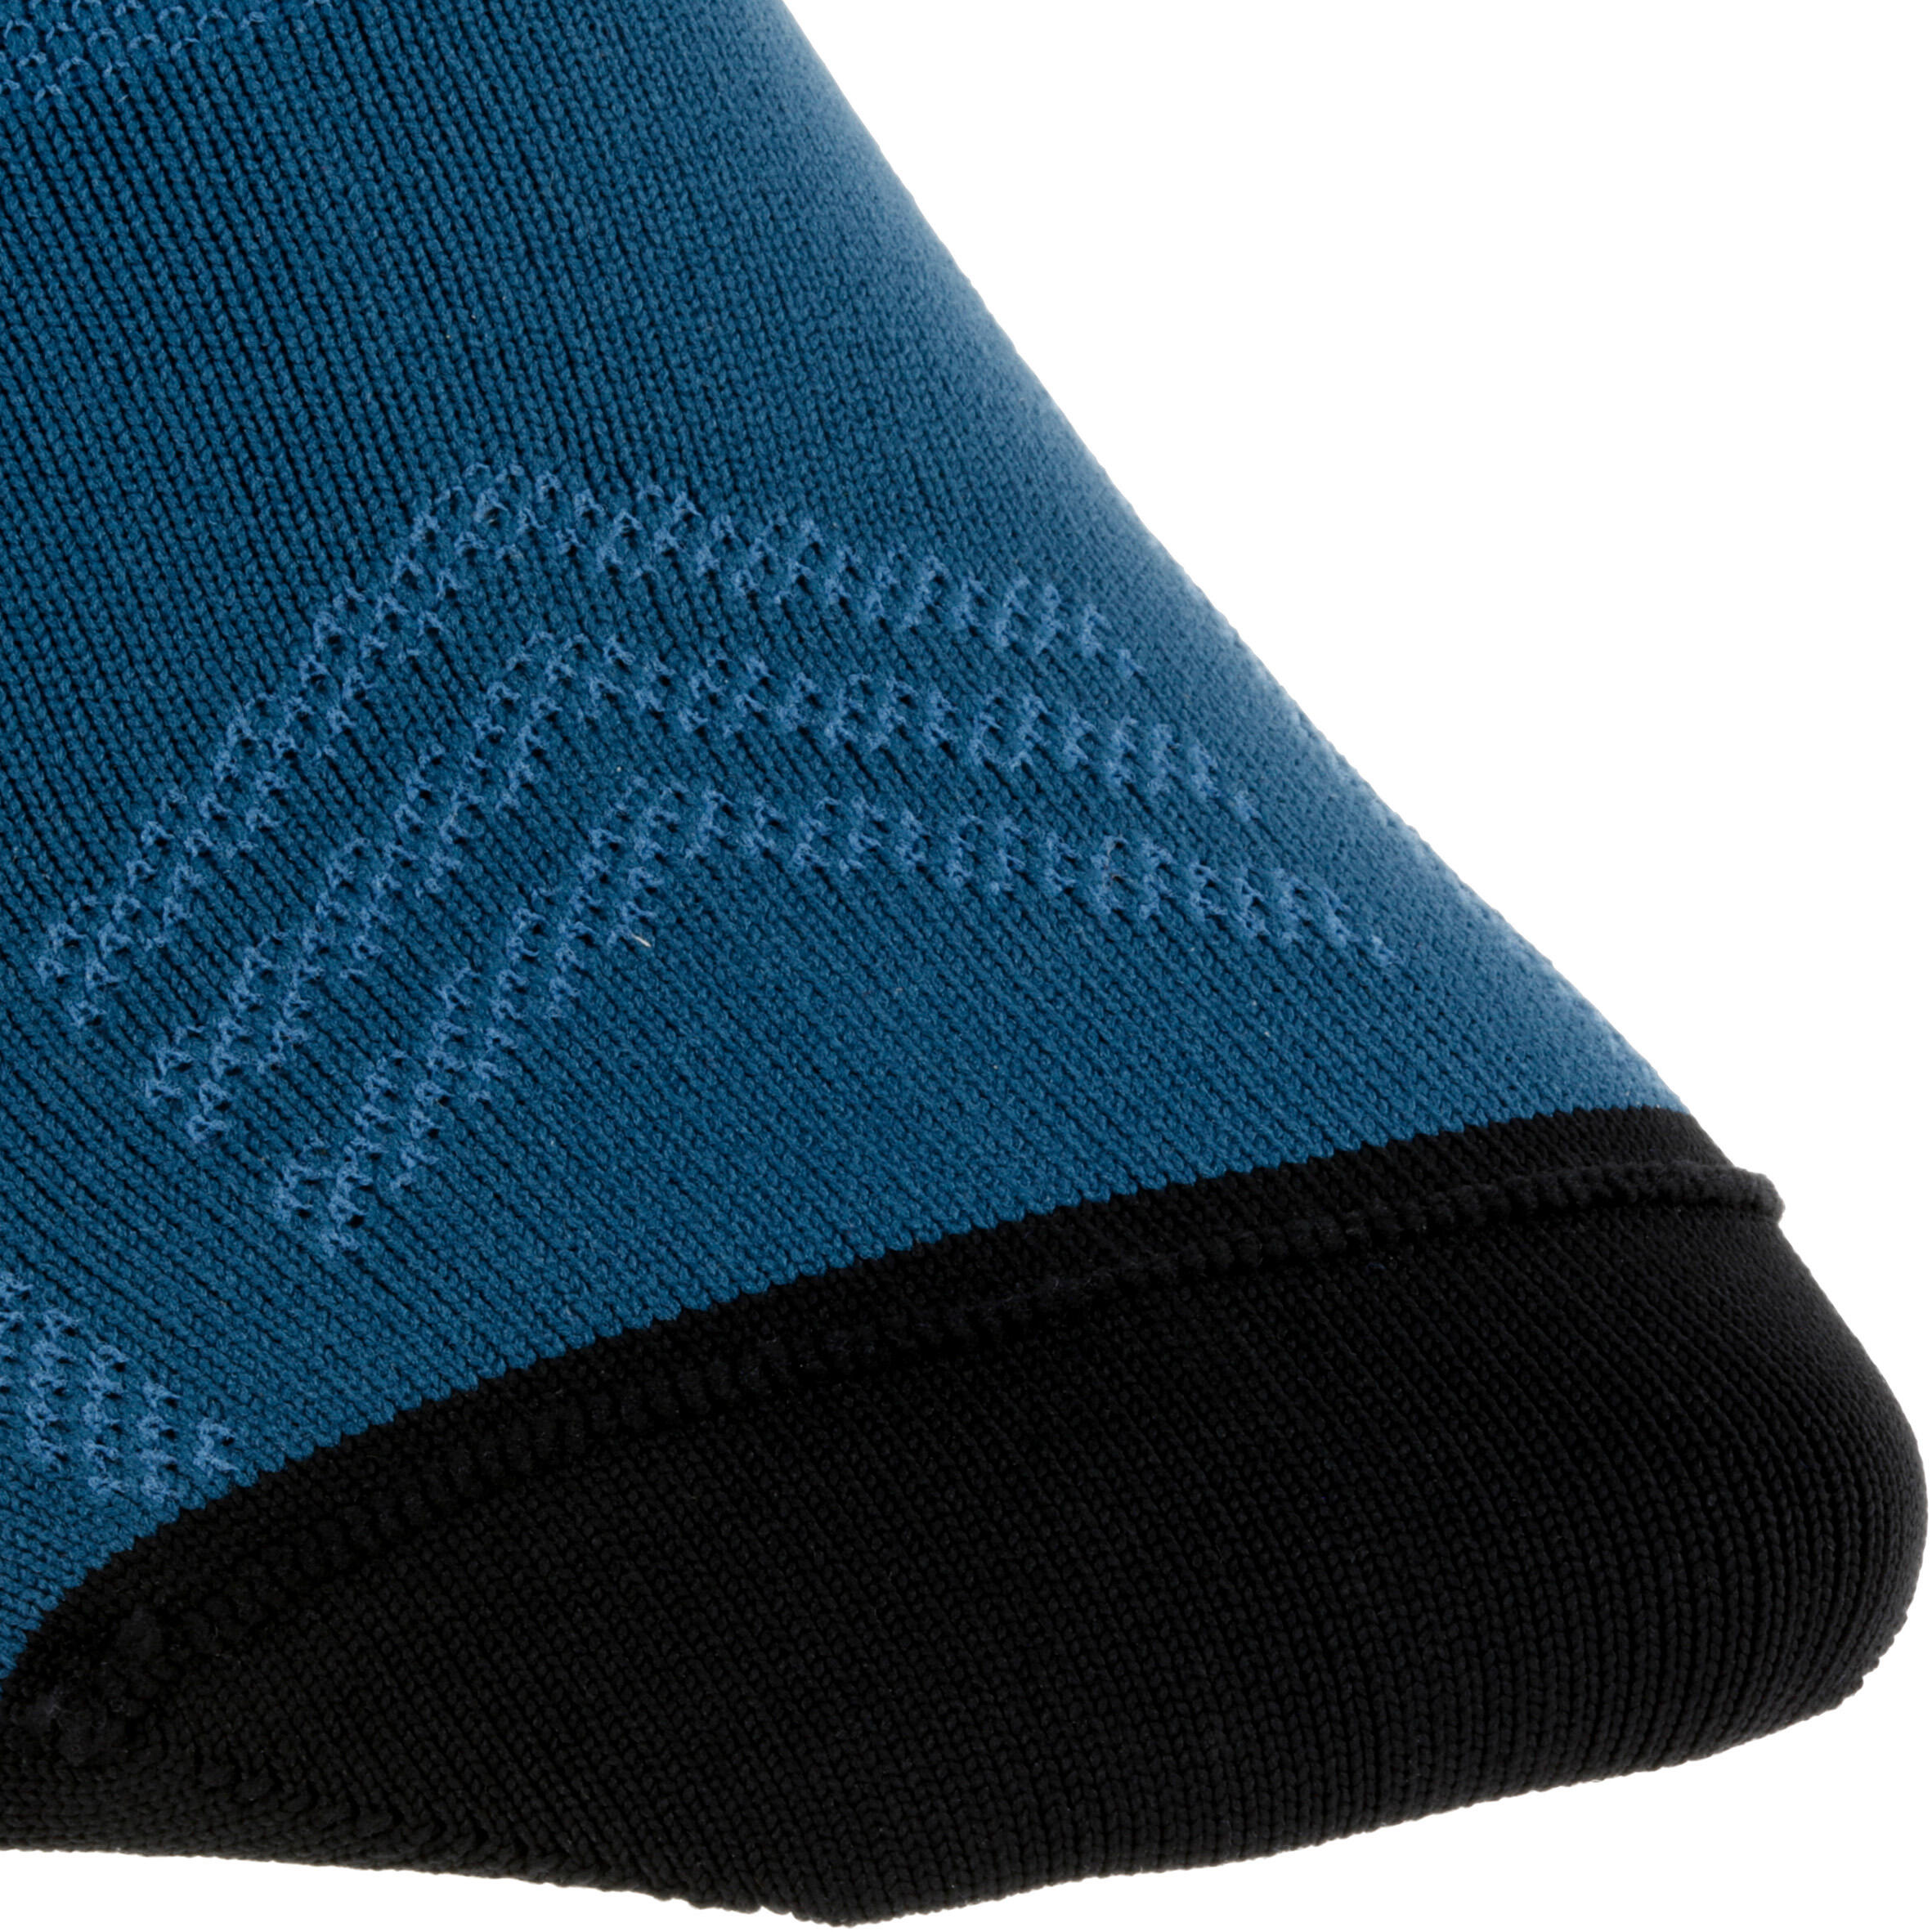 500 Cycling Socks - Dark Blue 3/8